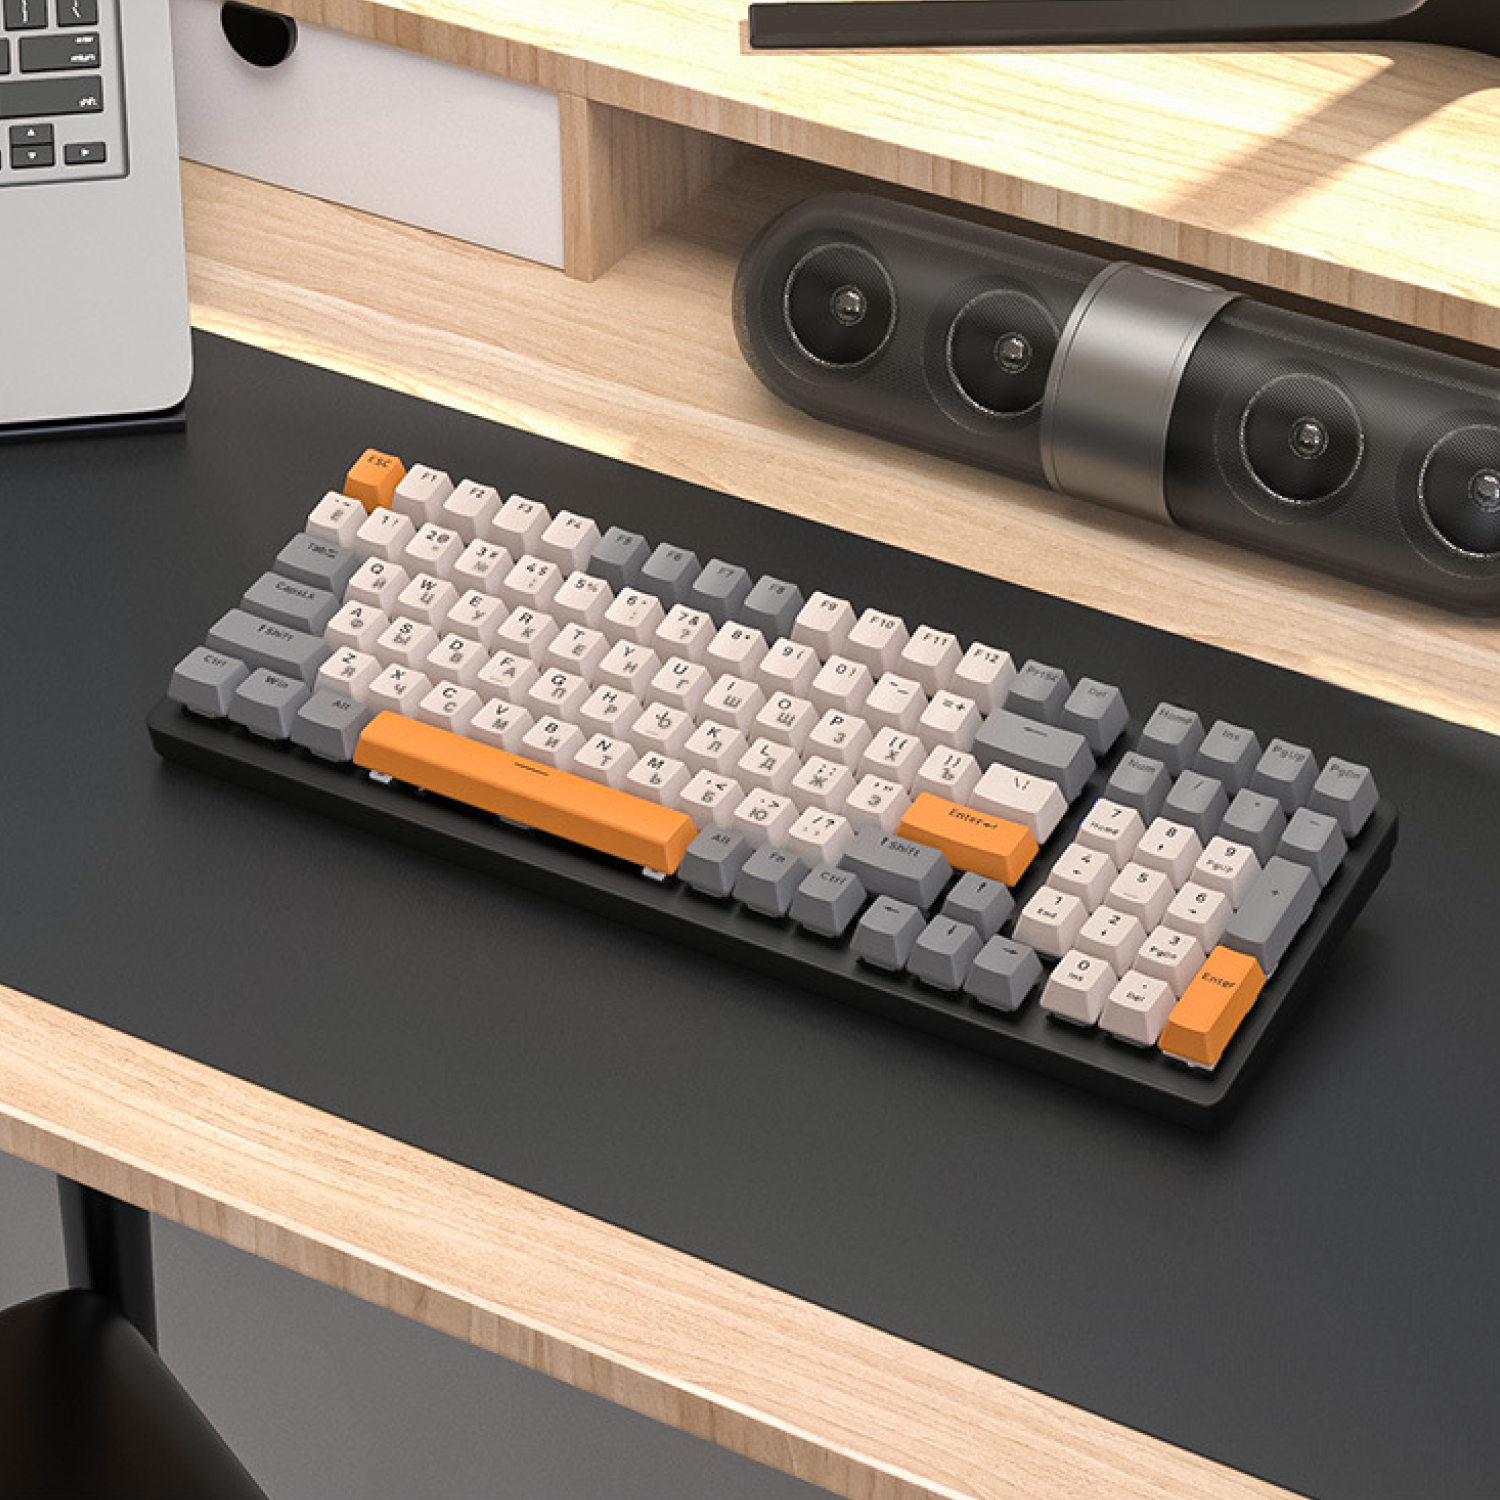 Комплект мышь клавиатура беспроводная механическая русская Wolf К6 + Hot-Swap мышка Х1 с подсветкой набор для компьютера ноутбука mouse keyboard